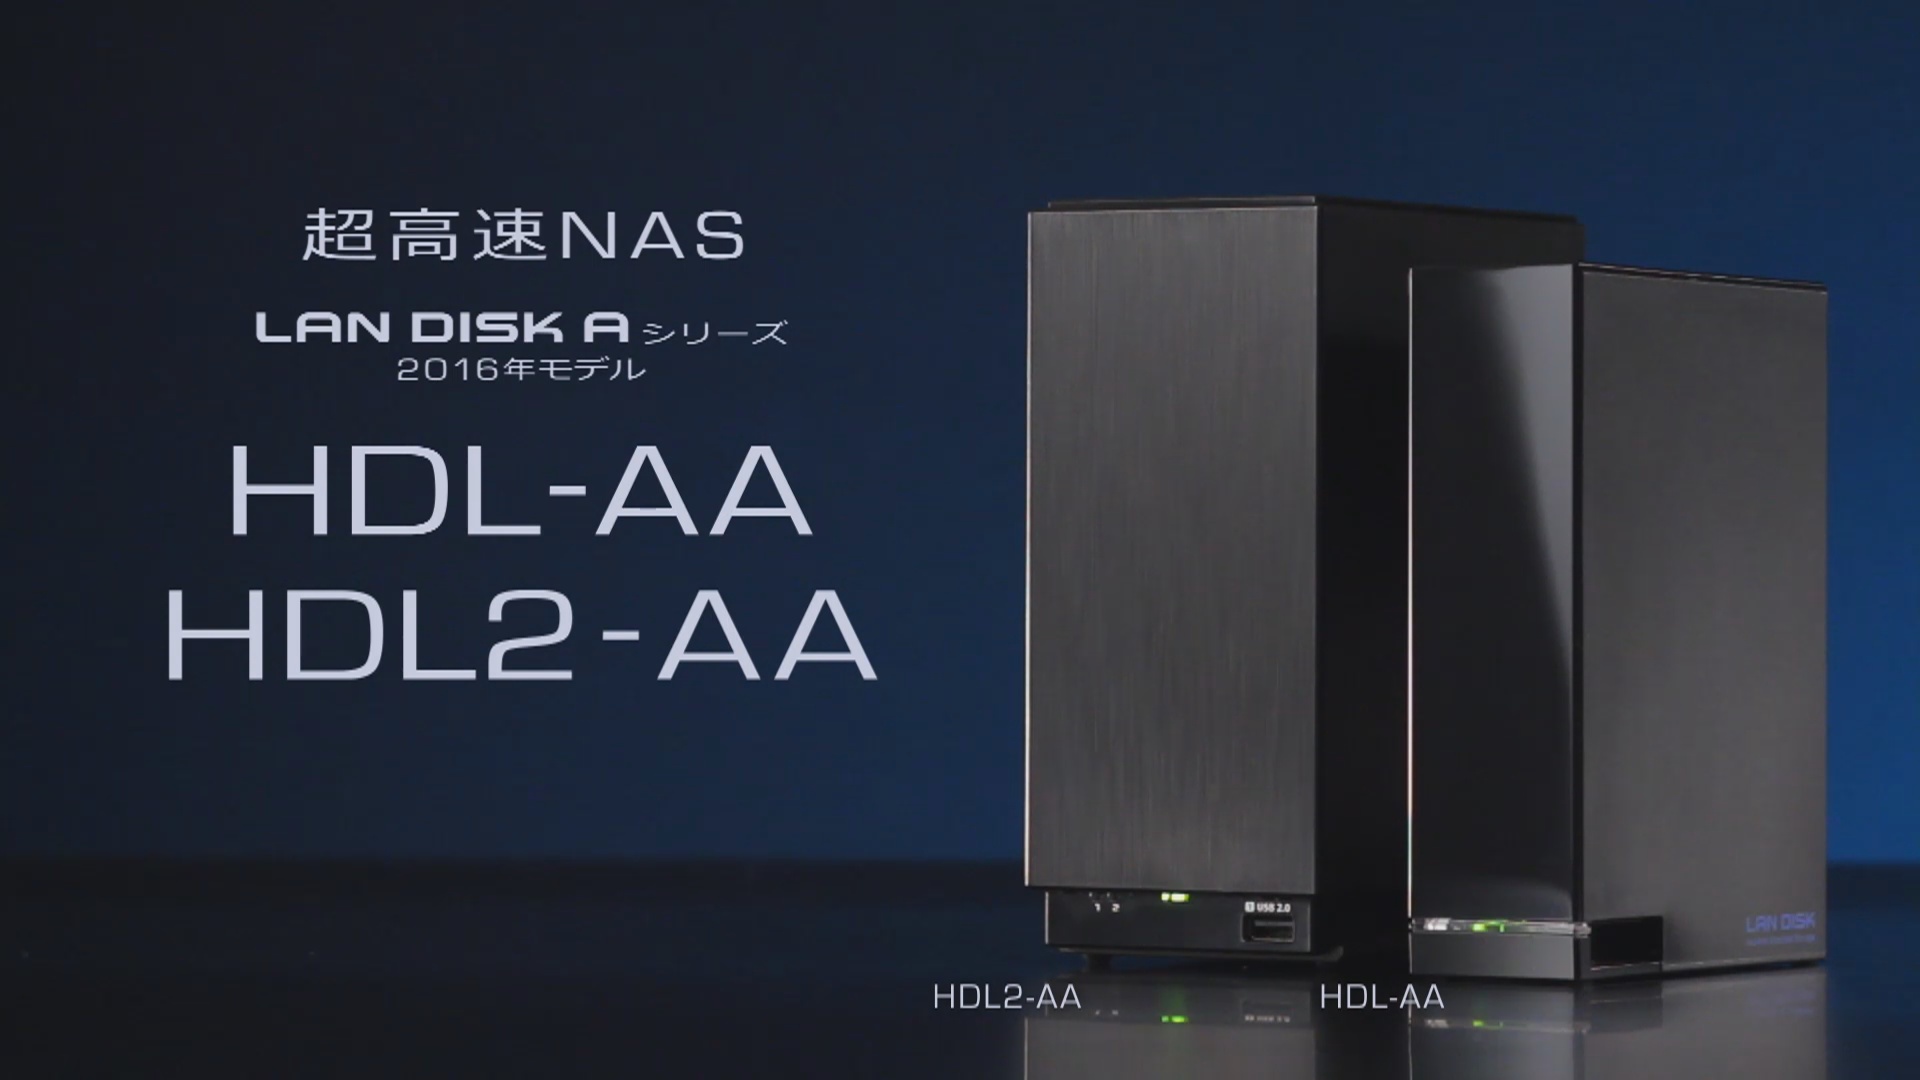 本物◇ IODATA HDL2-AAX12 デュアルコアCPU搭載 ネットワーク接続ハードディスク NAS 2ドライブモデル 12TB RAID  レイド